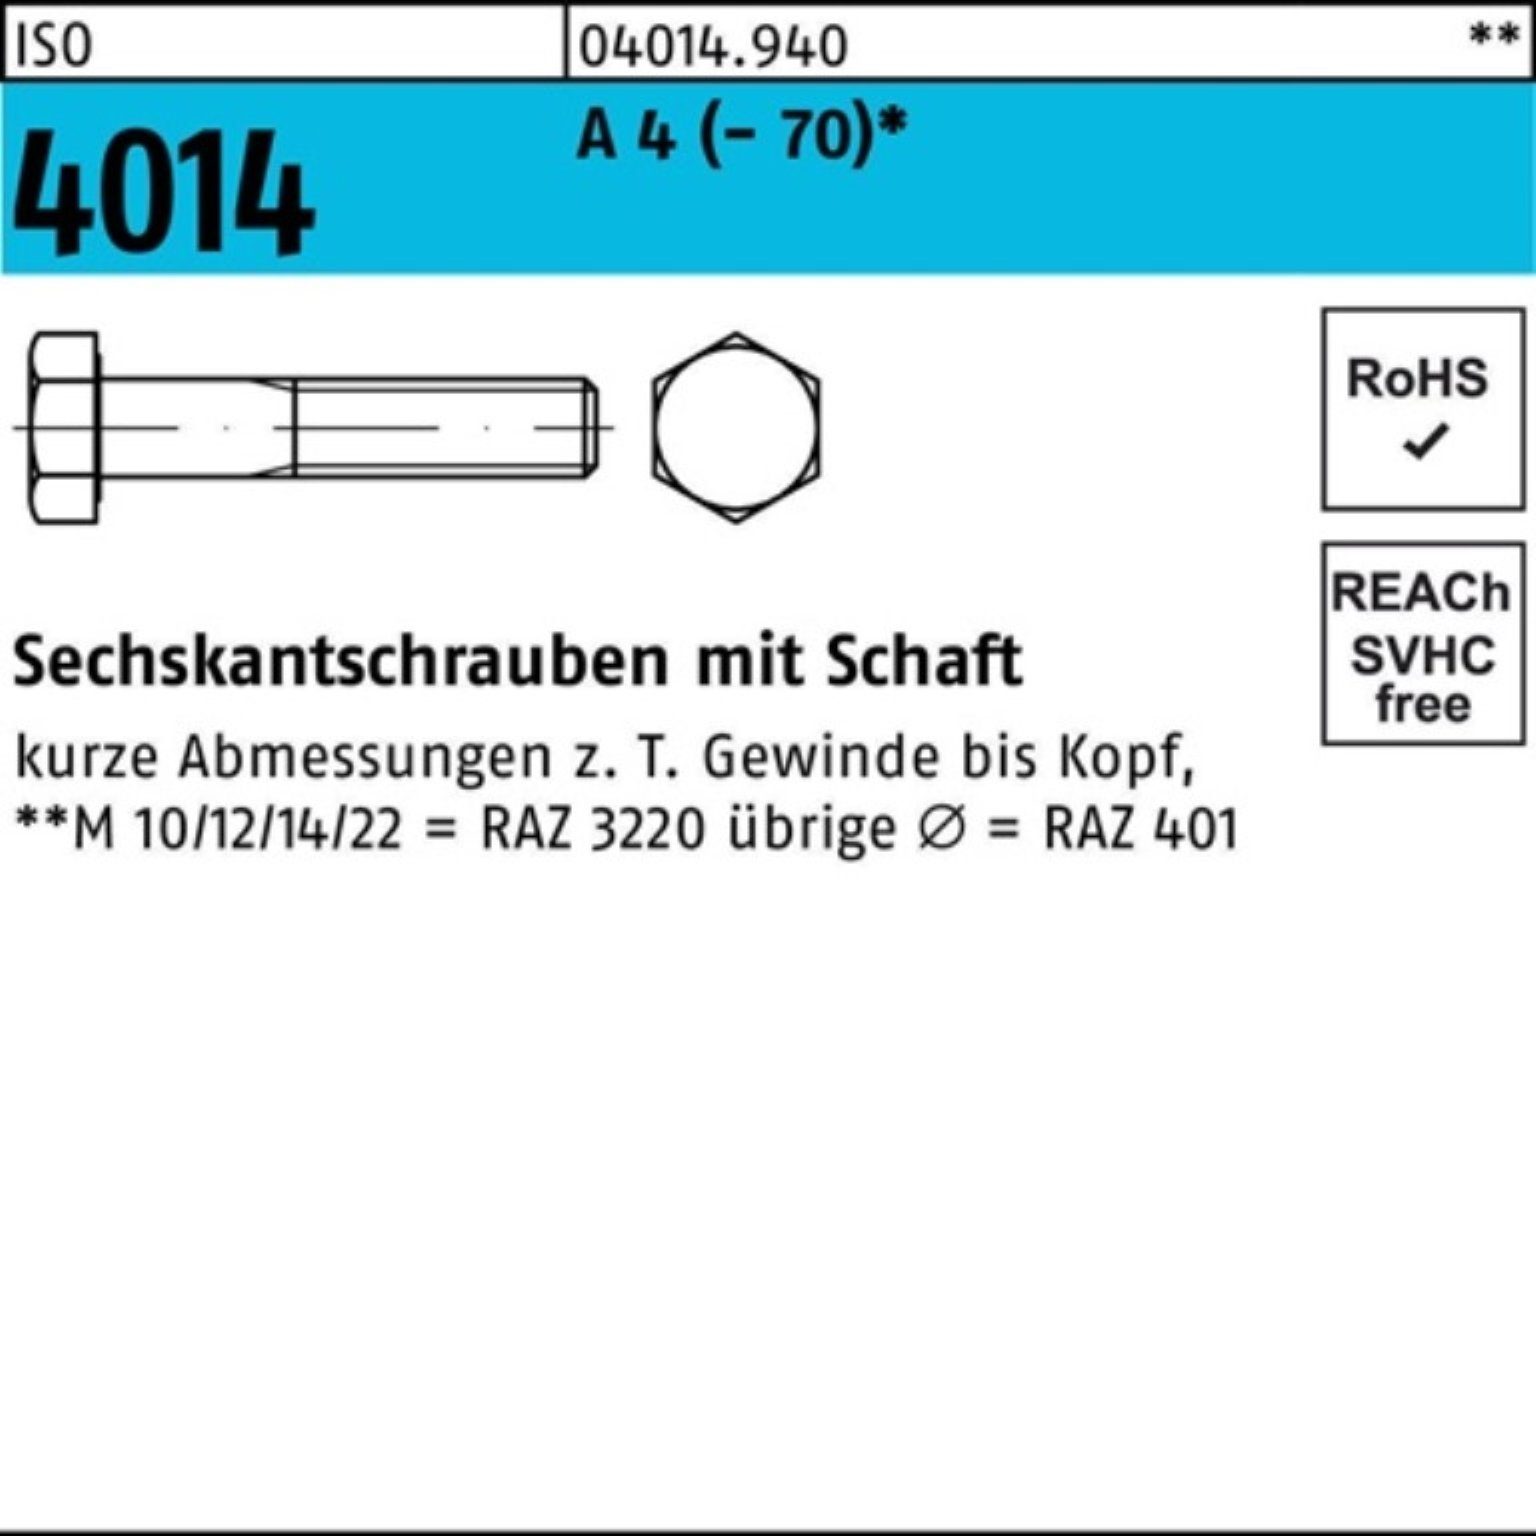 Bufab Sechskantschraube 100er Pack Sechskantschraube ISO 4014 Schaft M8x 55 A 4 (70) 100 St